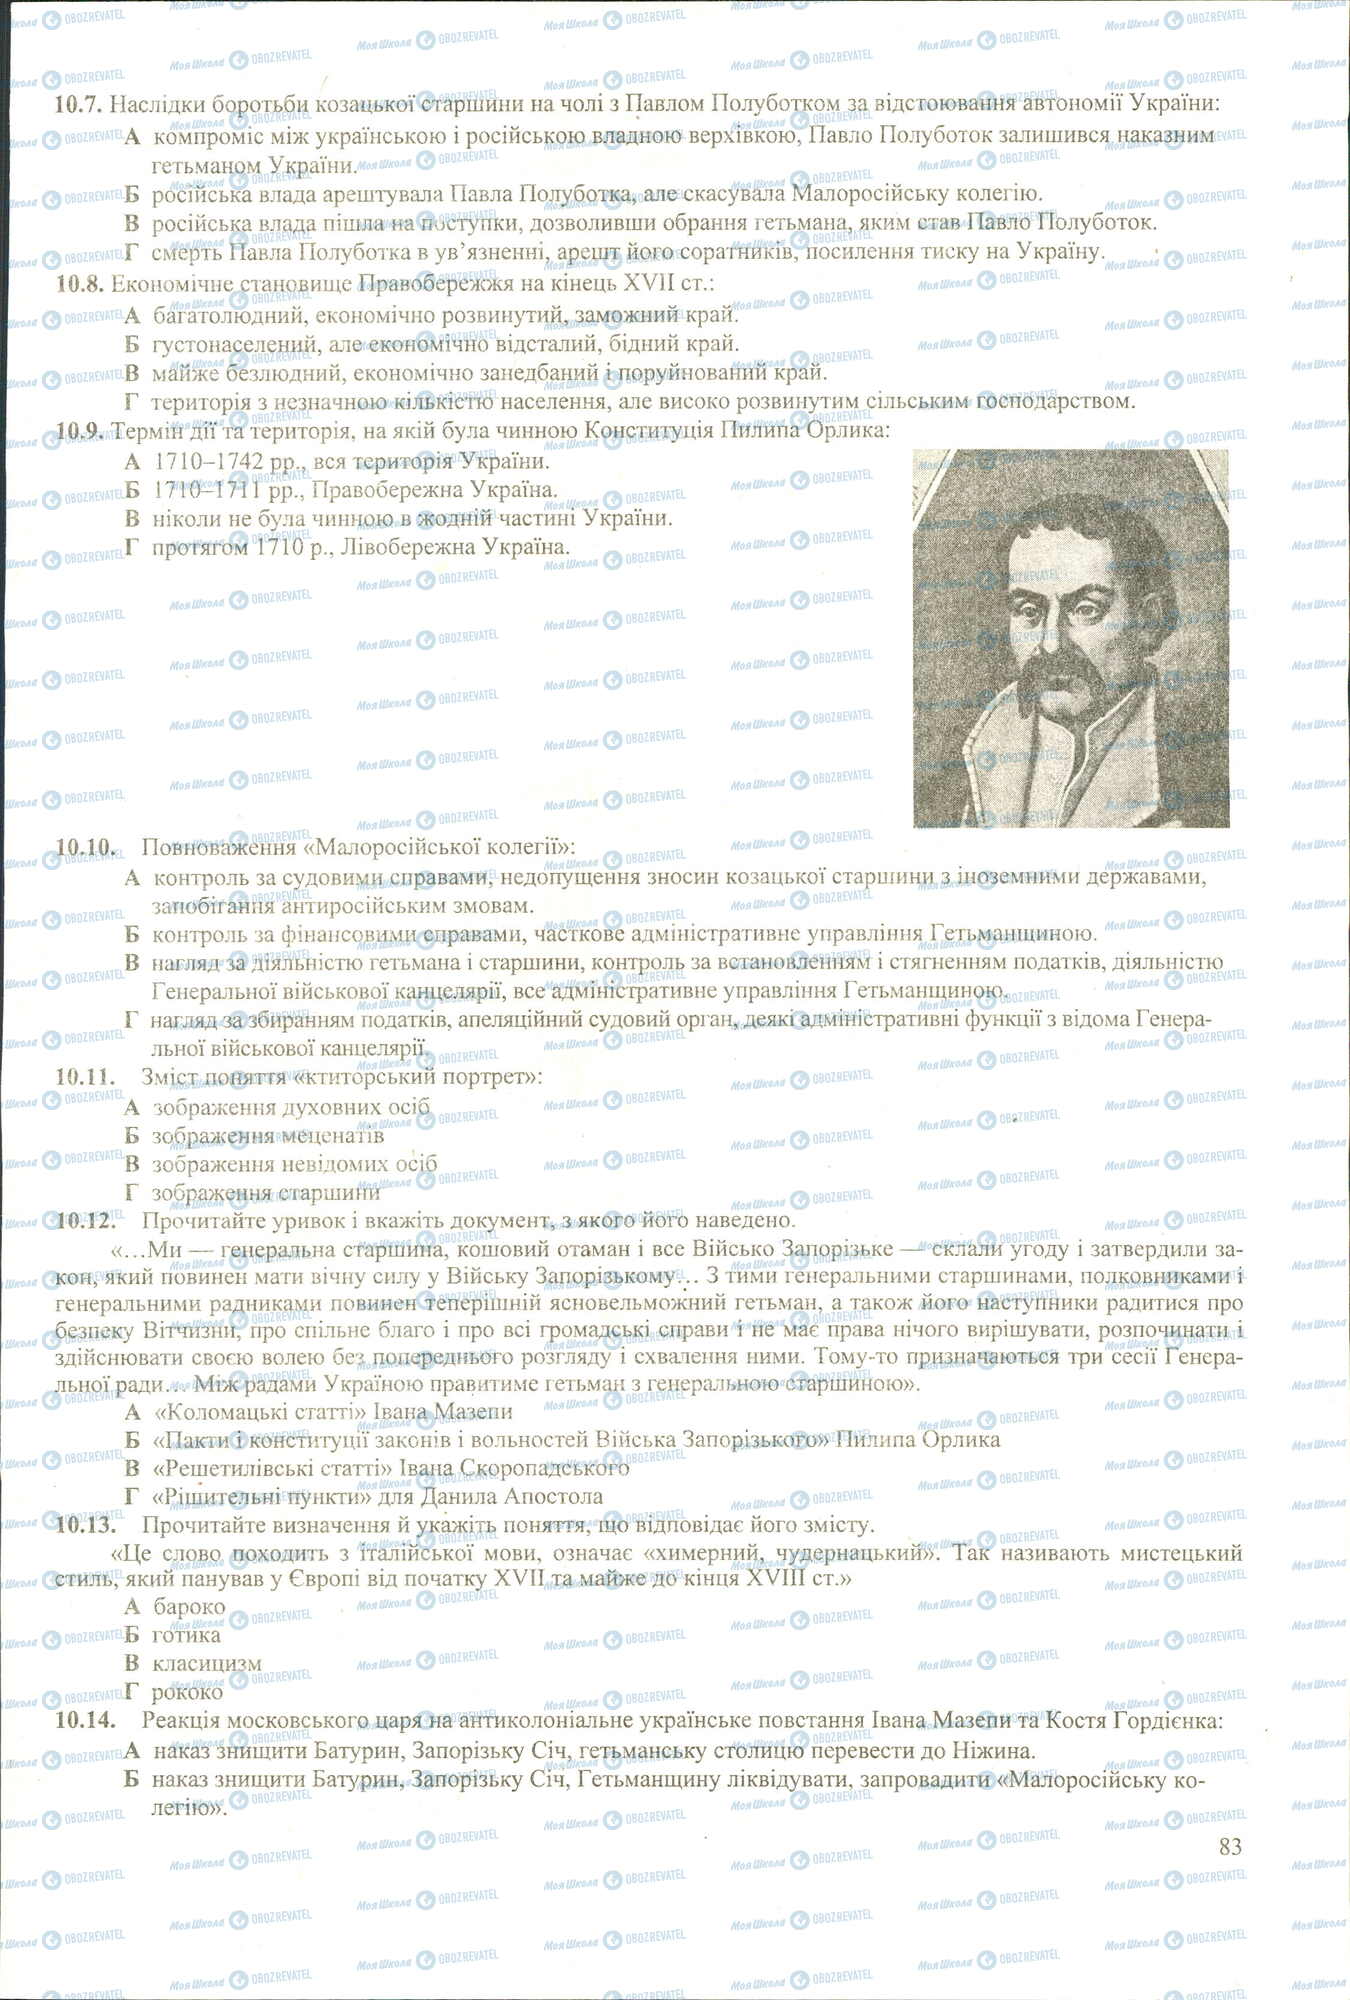 ЗНО История Украины 11 класс страница 7-14